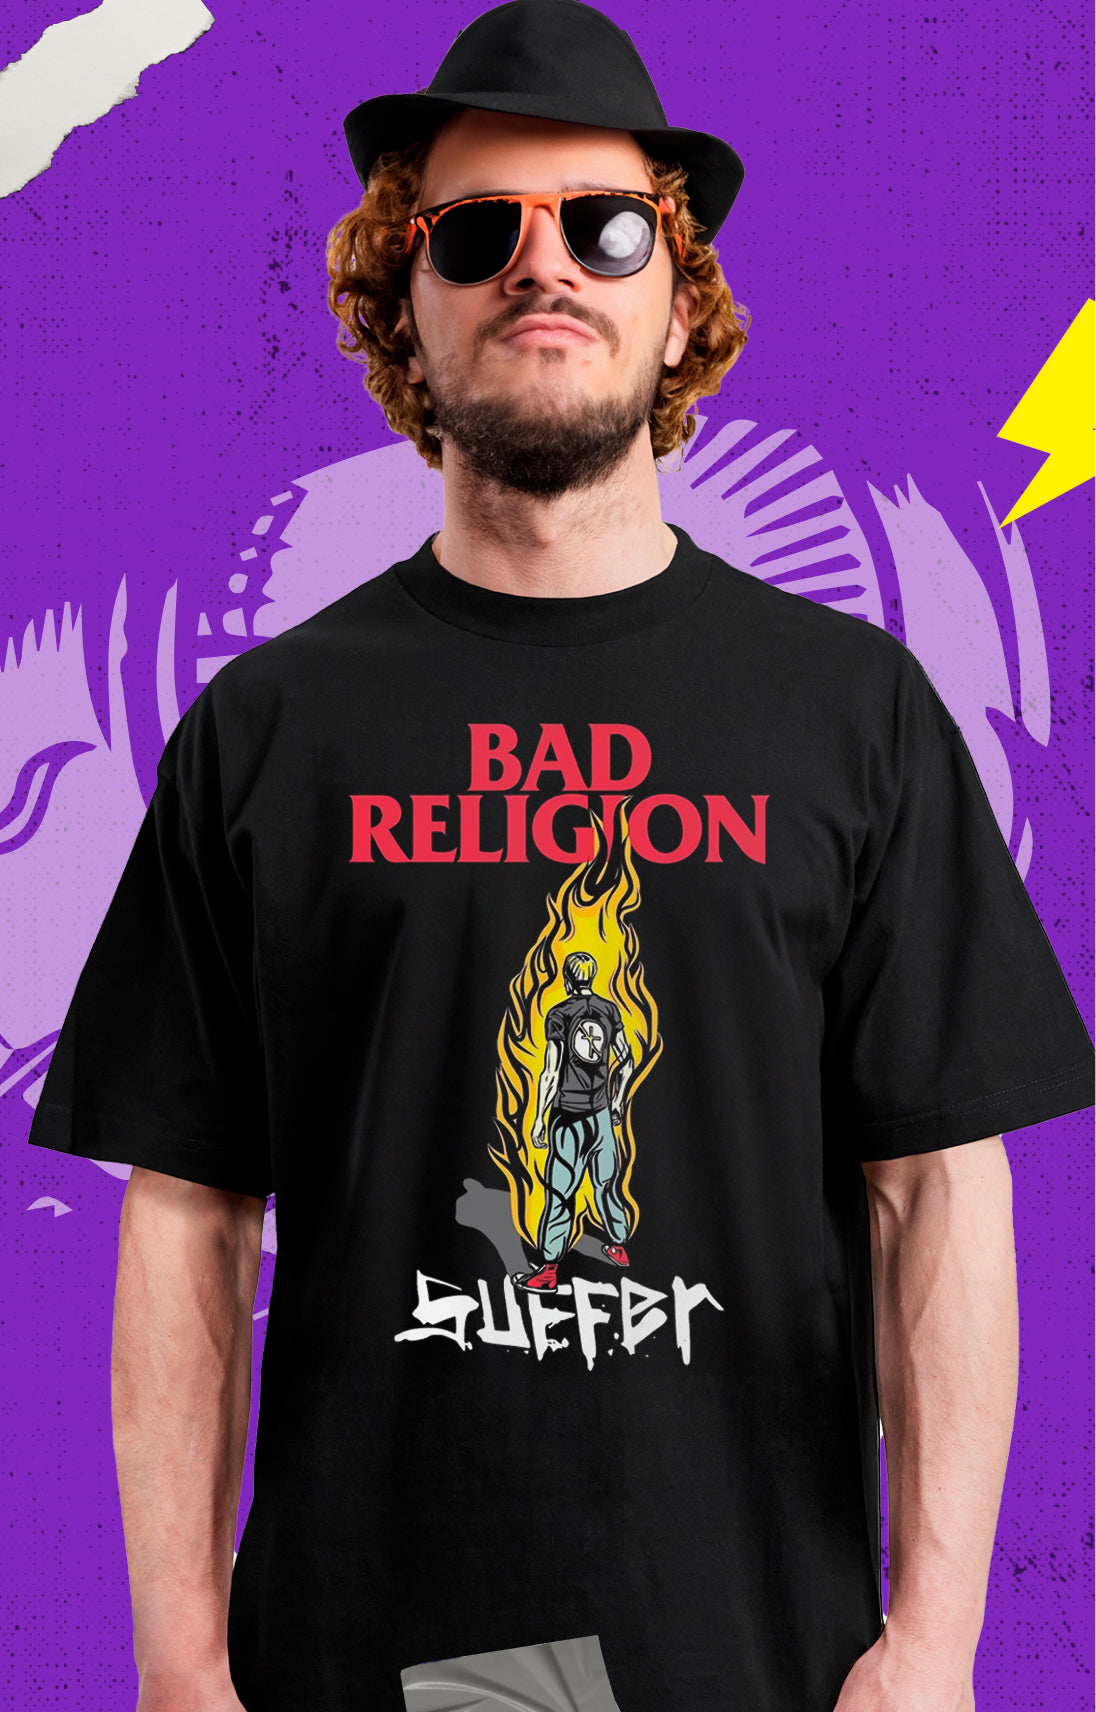 Bad Religion - Suffer - Polera